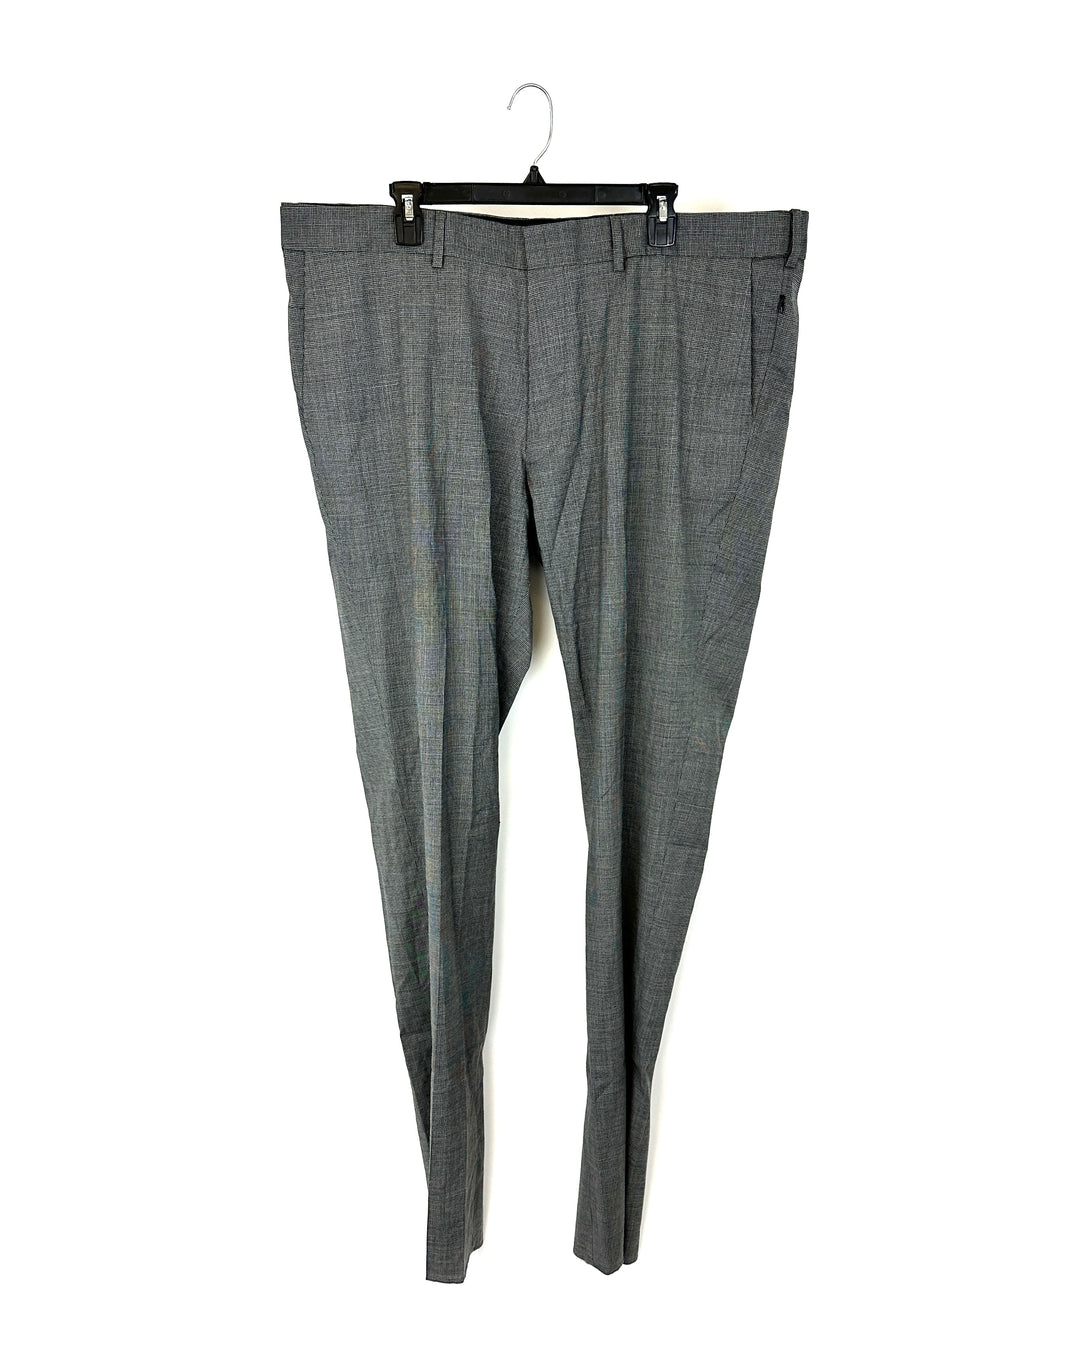 MENS Houndstooth Black/Grey Standard Fit Dress Pants - 42/39